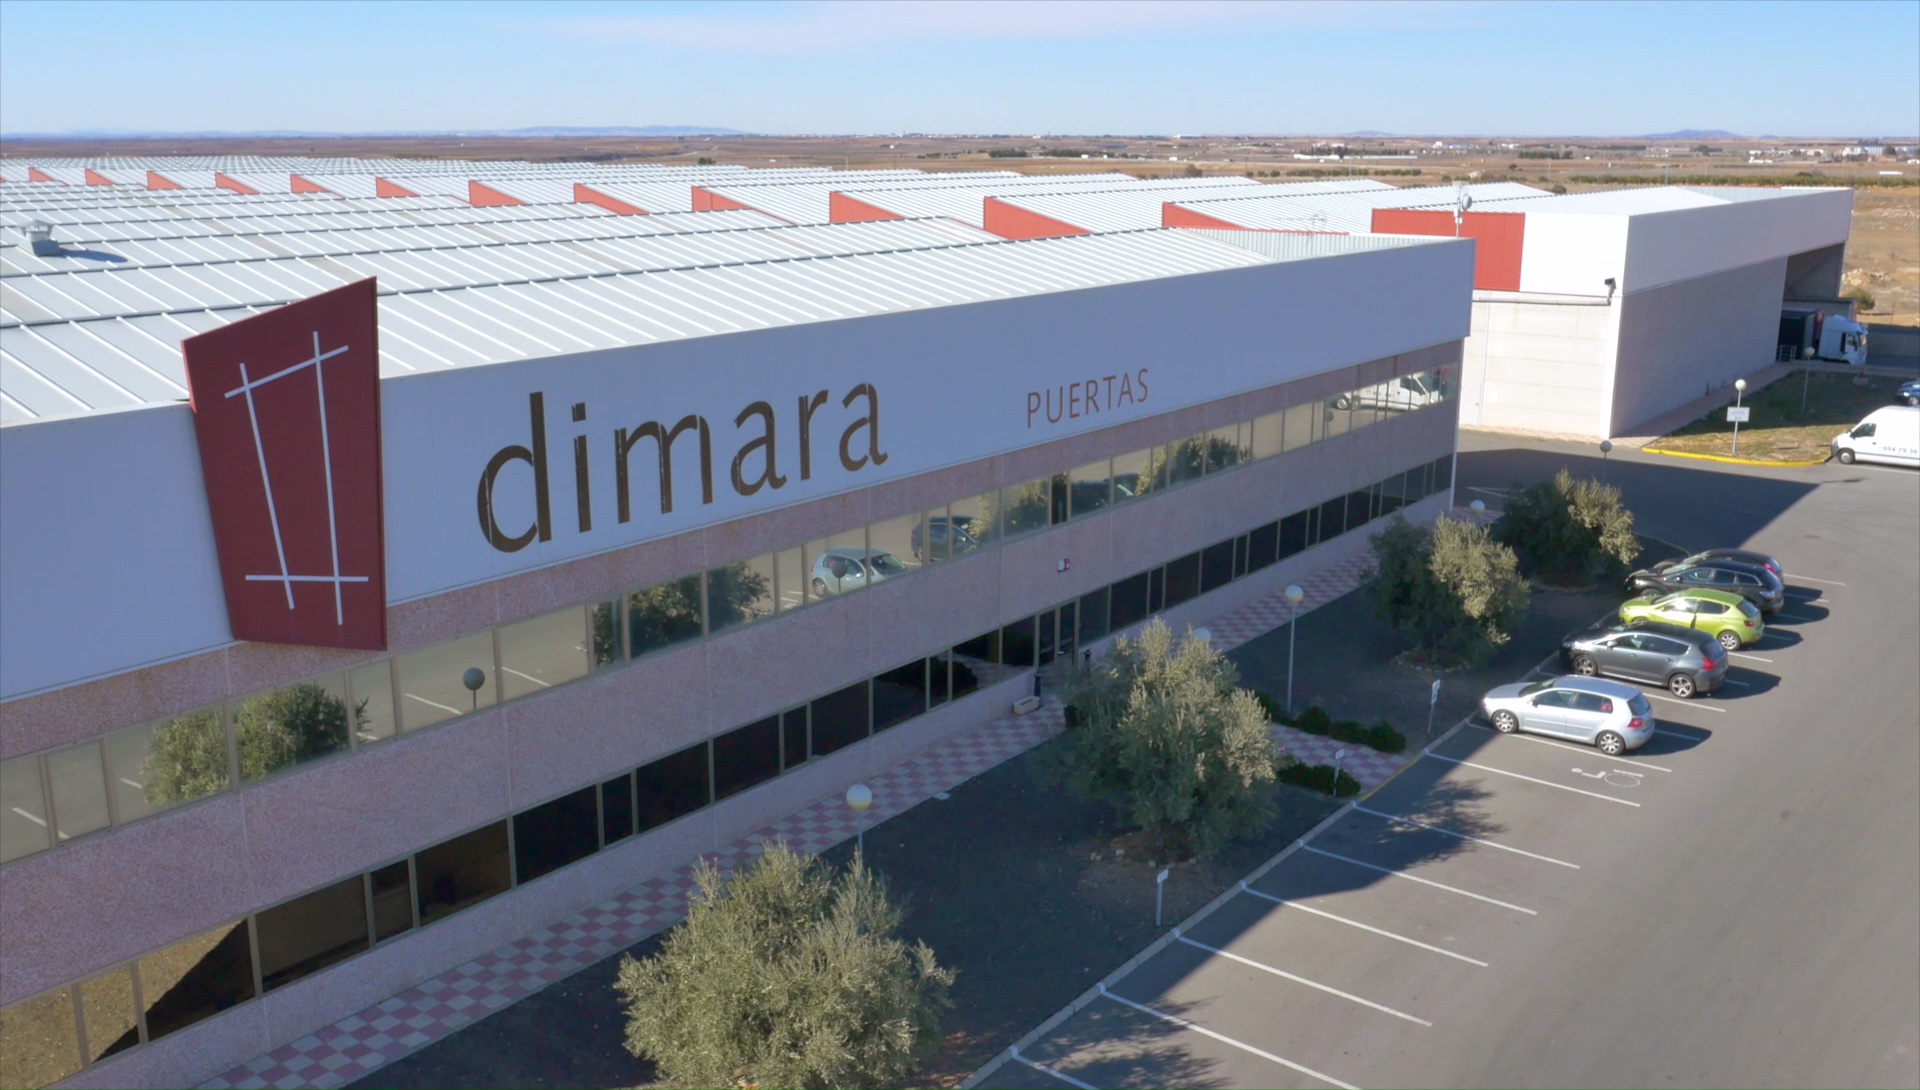 Dimoldura, líder en España en la fabricación de puertas y molduras, asistirá a la feria Fimma-Maderalia que se celebrará en Valencia del 6 al 9 de febrero